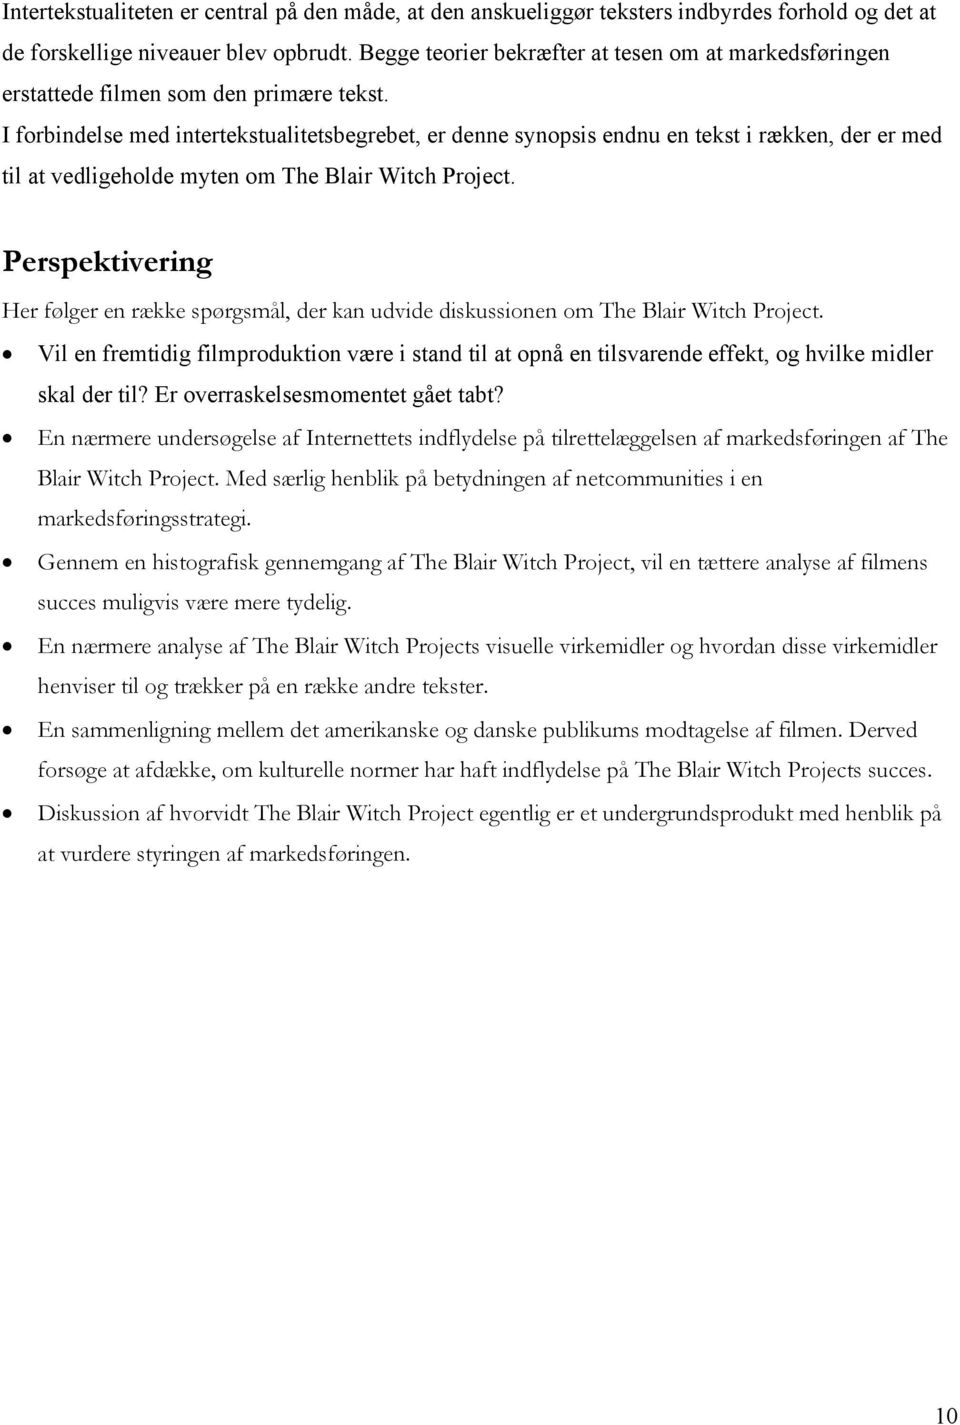 I forbindelse med intertekstualitetsbegrebet, er denne synopsis endnu en tekst i rækken, der er med til at vedligeholde myten om The Blair Witch Project.